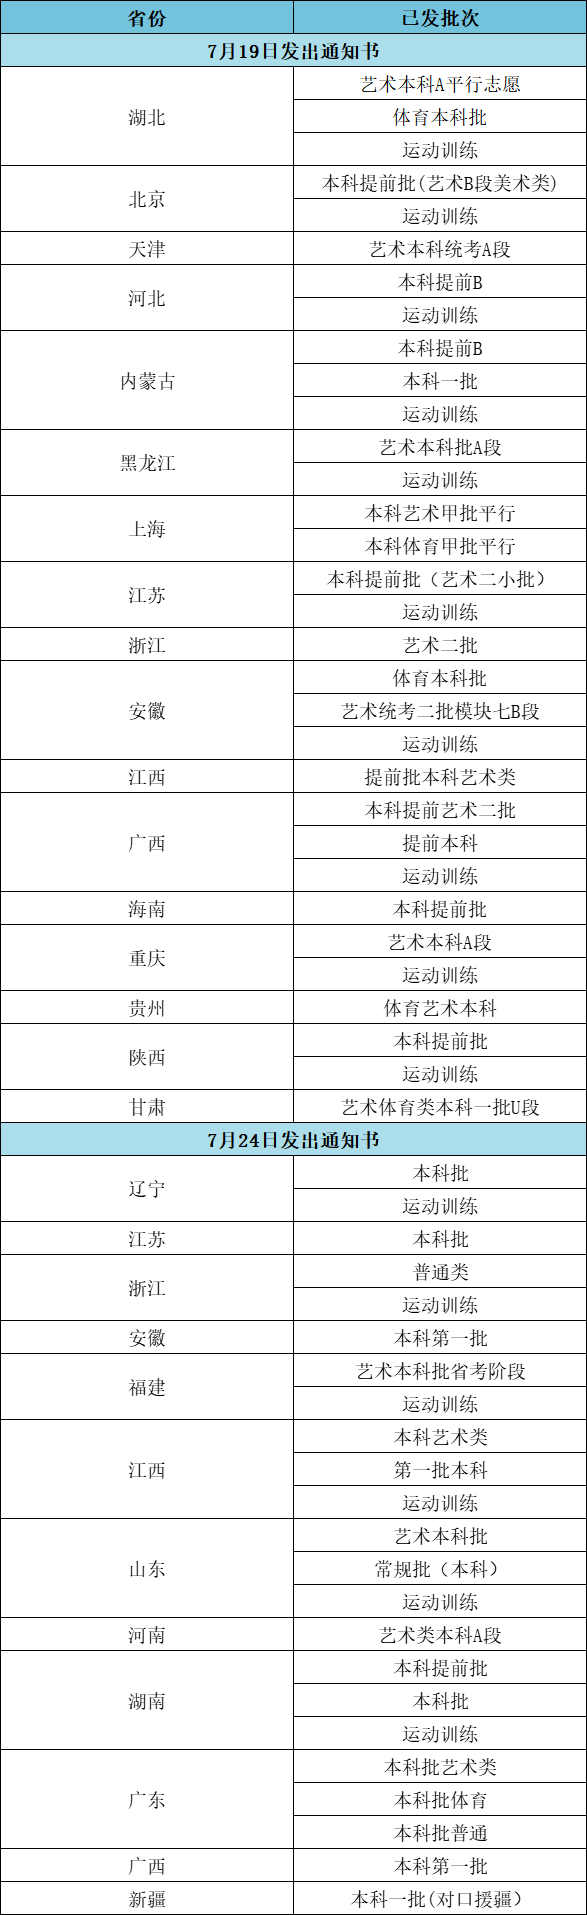 2023江汉大学高考录取通知书邮寄进度（截止7.24）